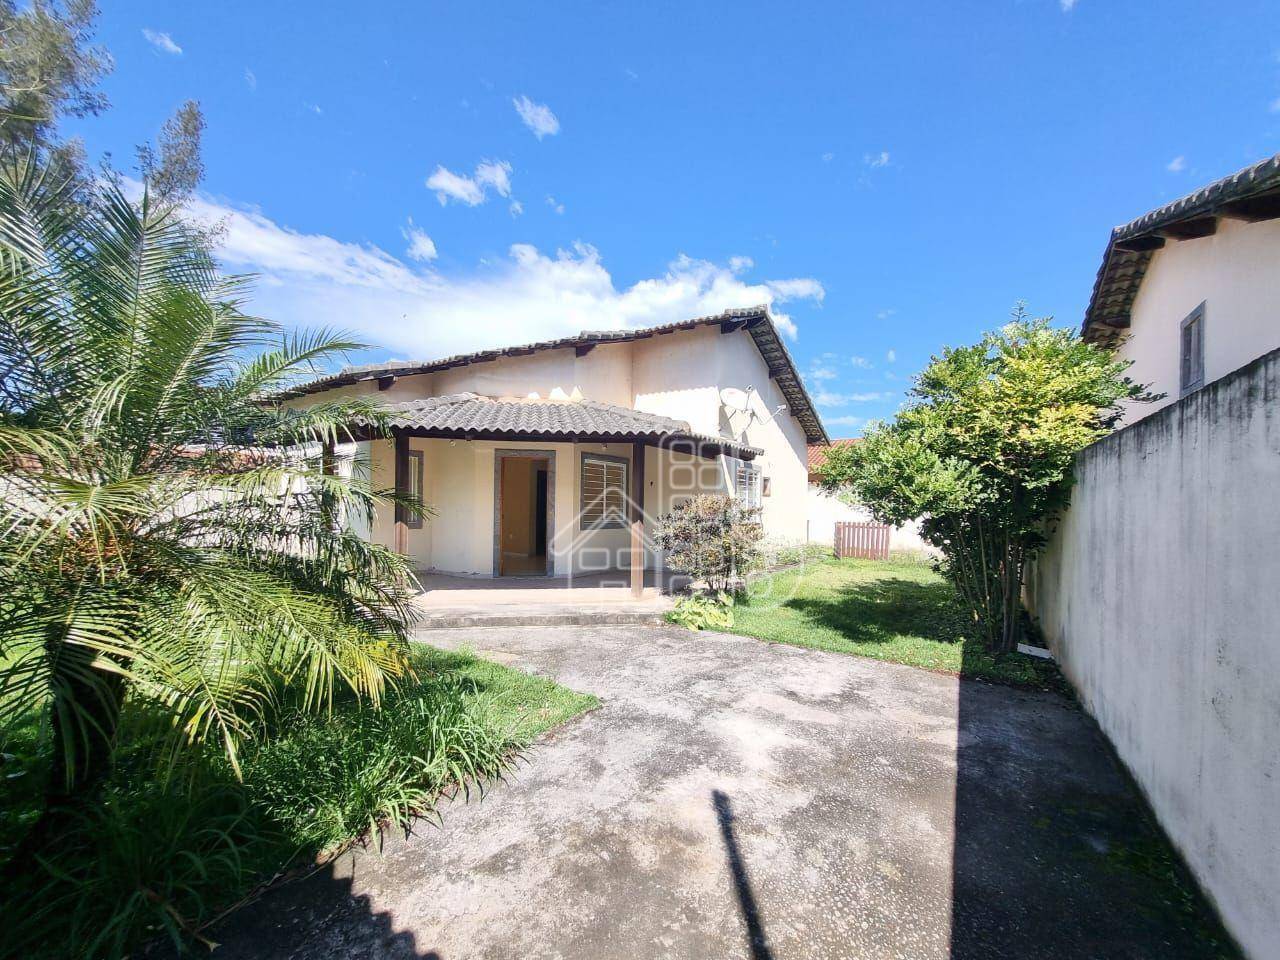 Casa com 2 dormitórios à venda, 87 m² por R$ 480.000,00 - Barroco (Itaipuaçu) - Maricá/RJ